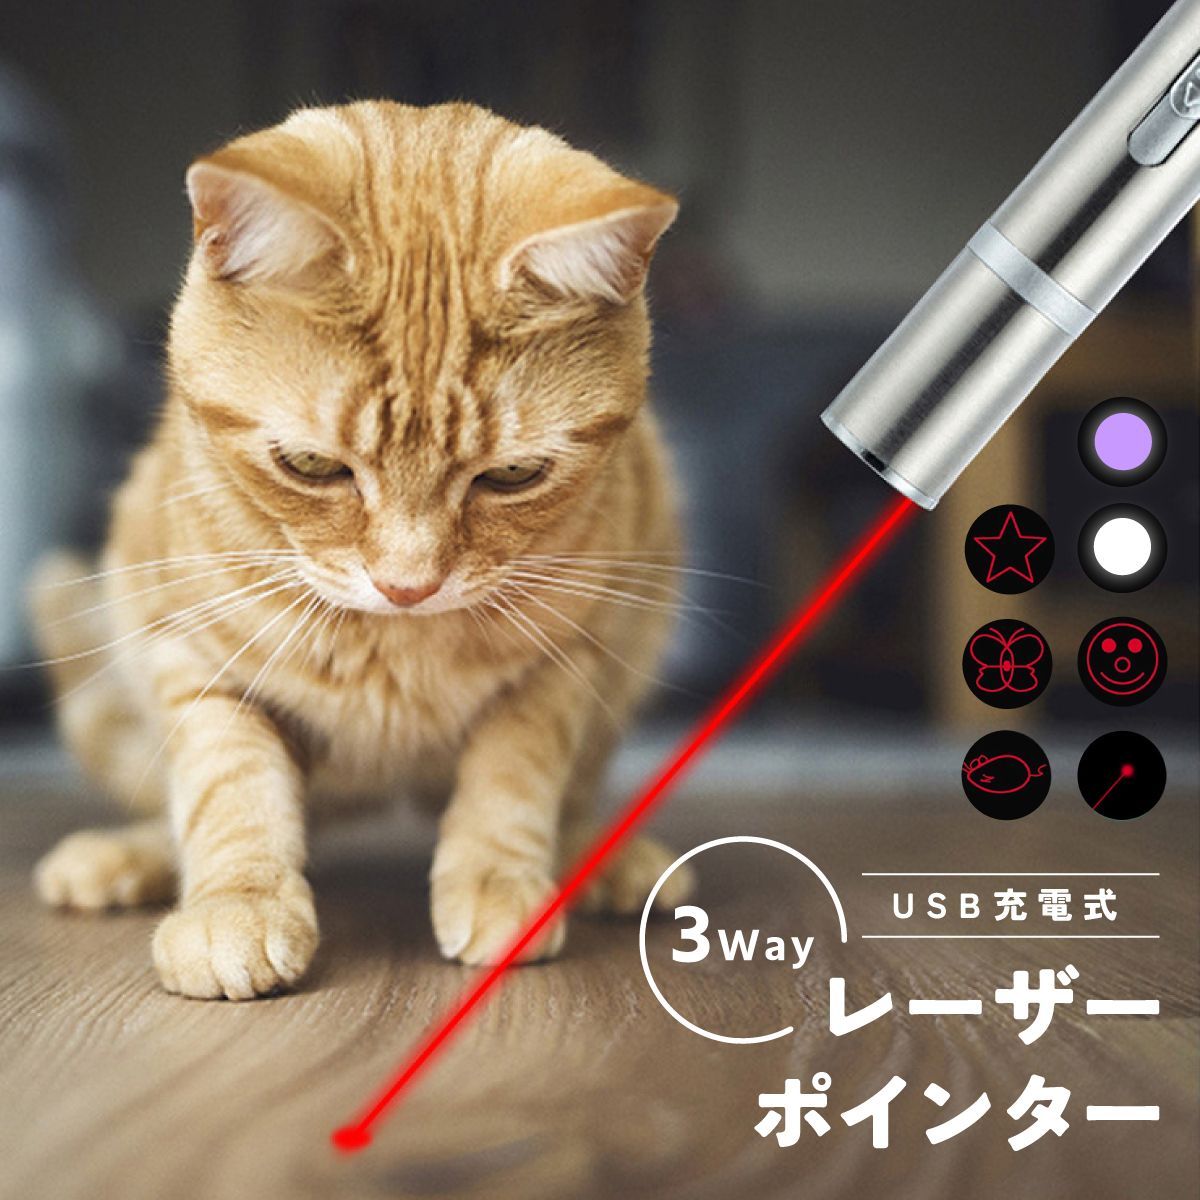 海外輸入 匿名配送 猫おもちゃ 充電式 USB おもちゃ レーザーポインター 猫じゃらし